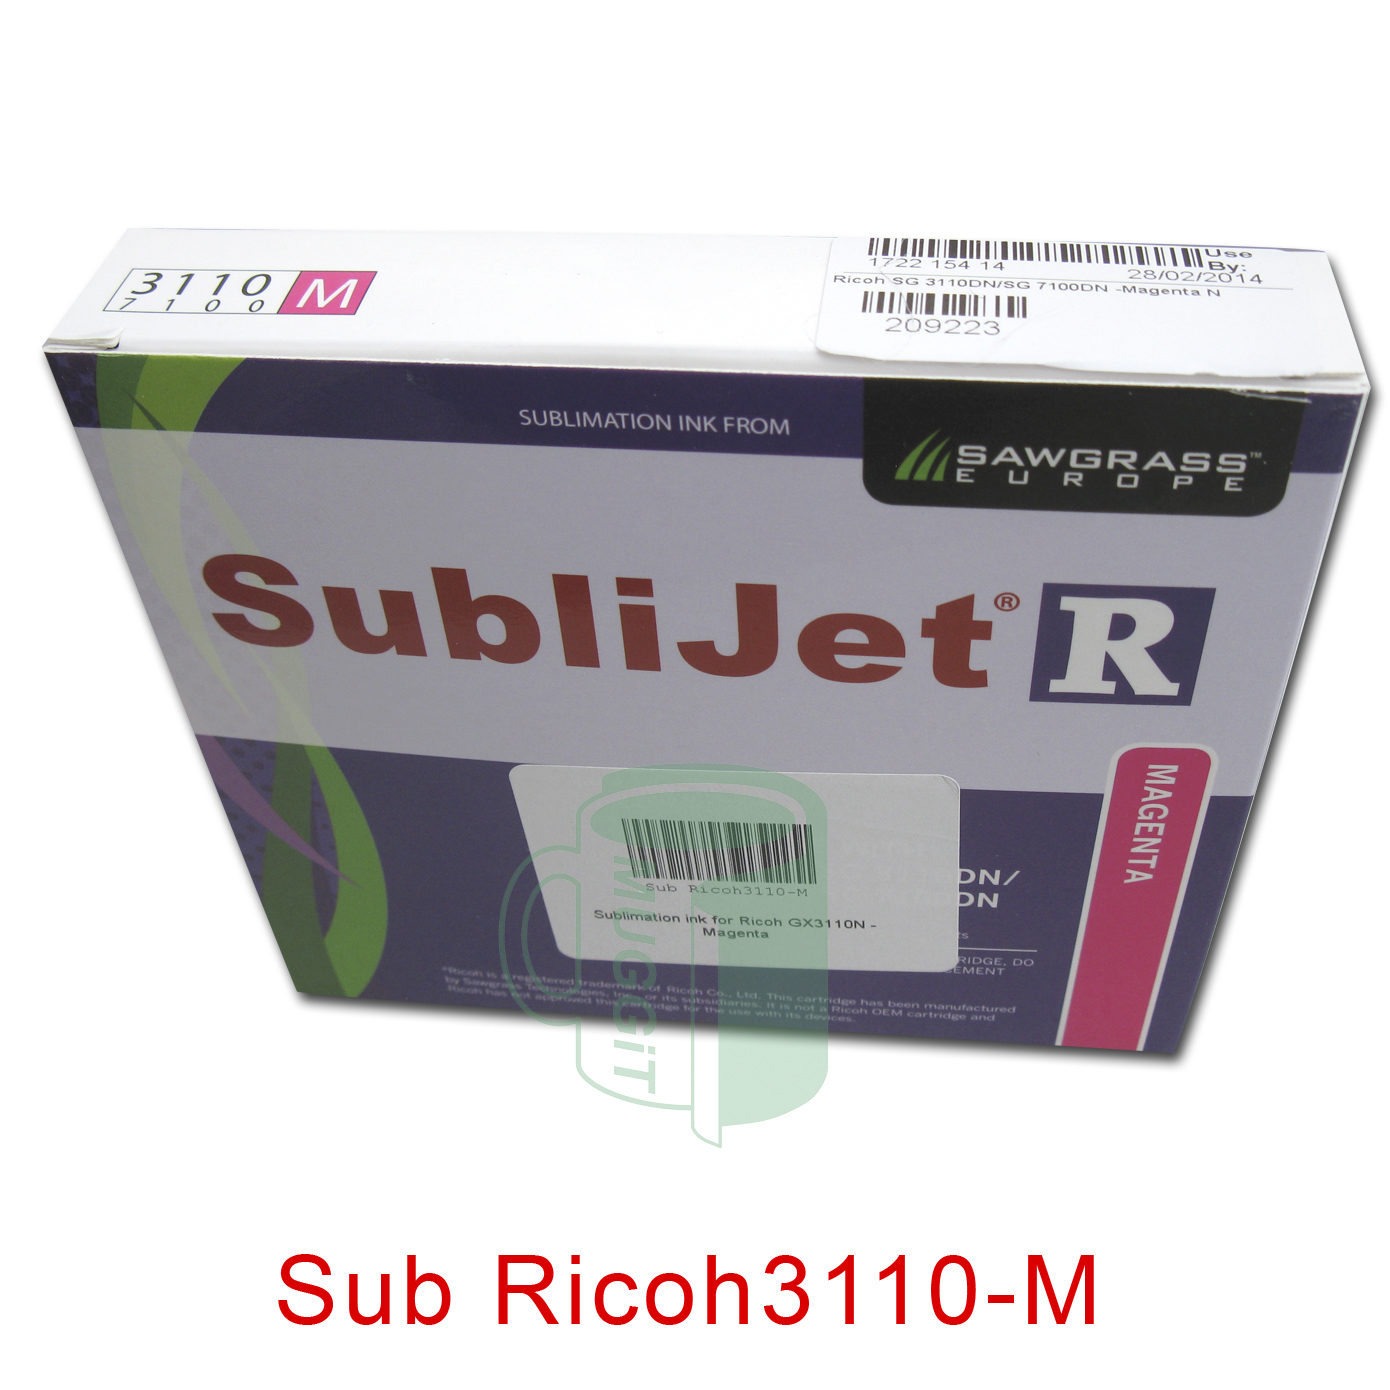 Sub Ricoh3110-M 1